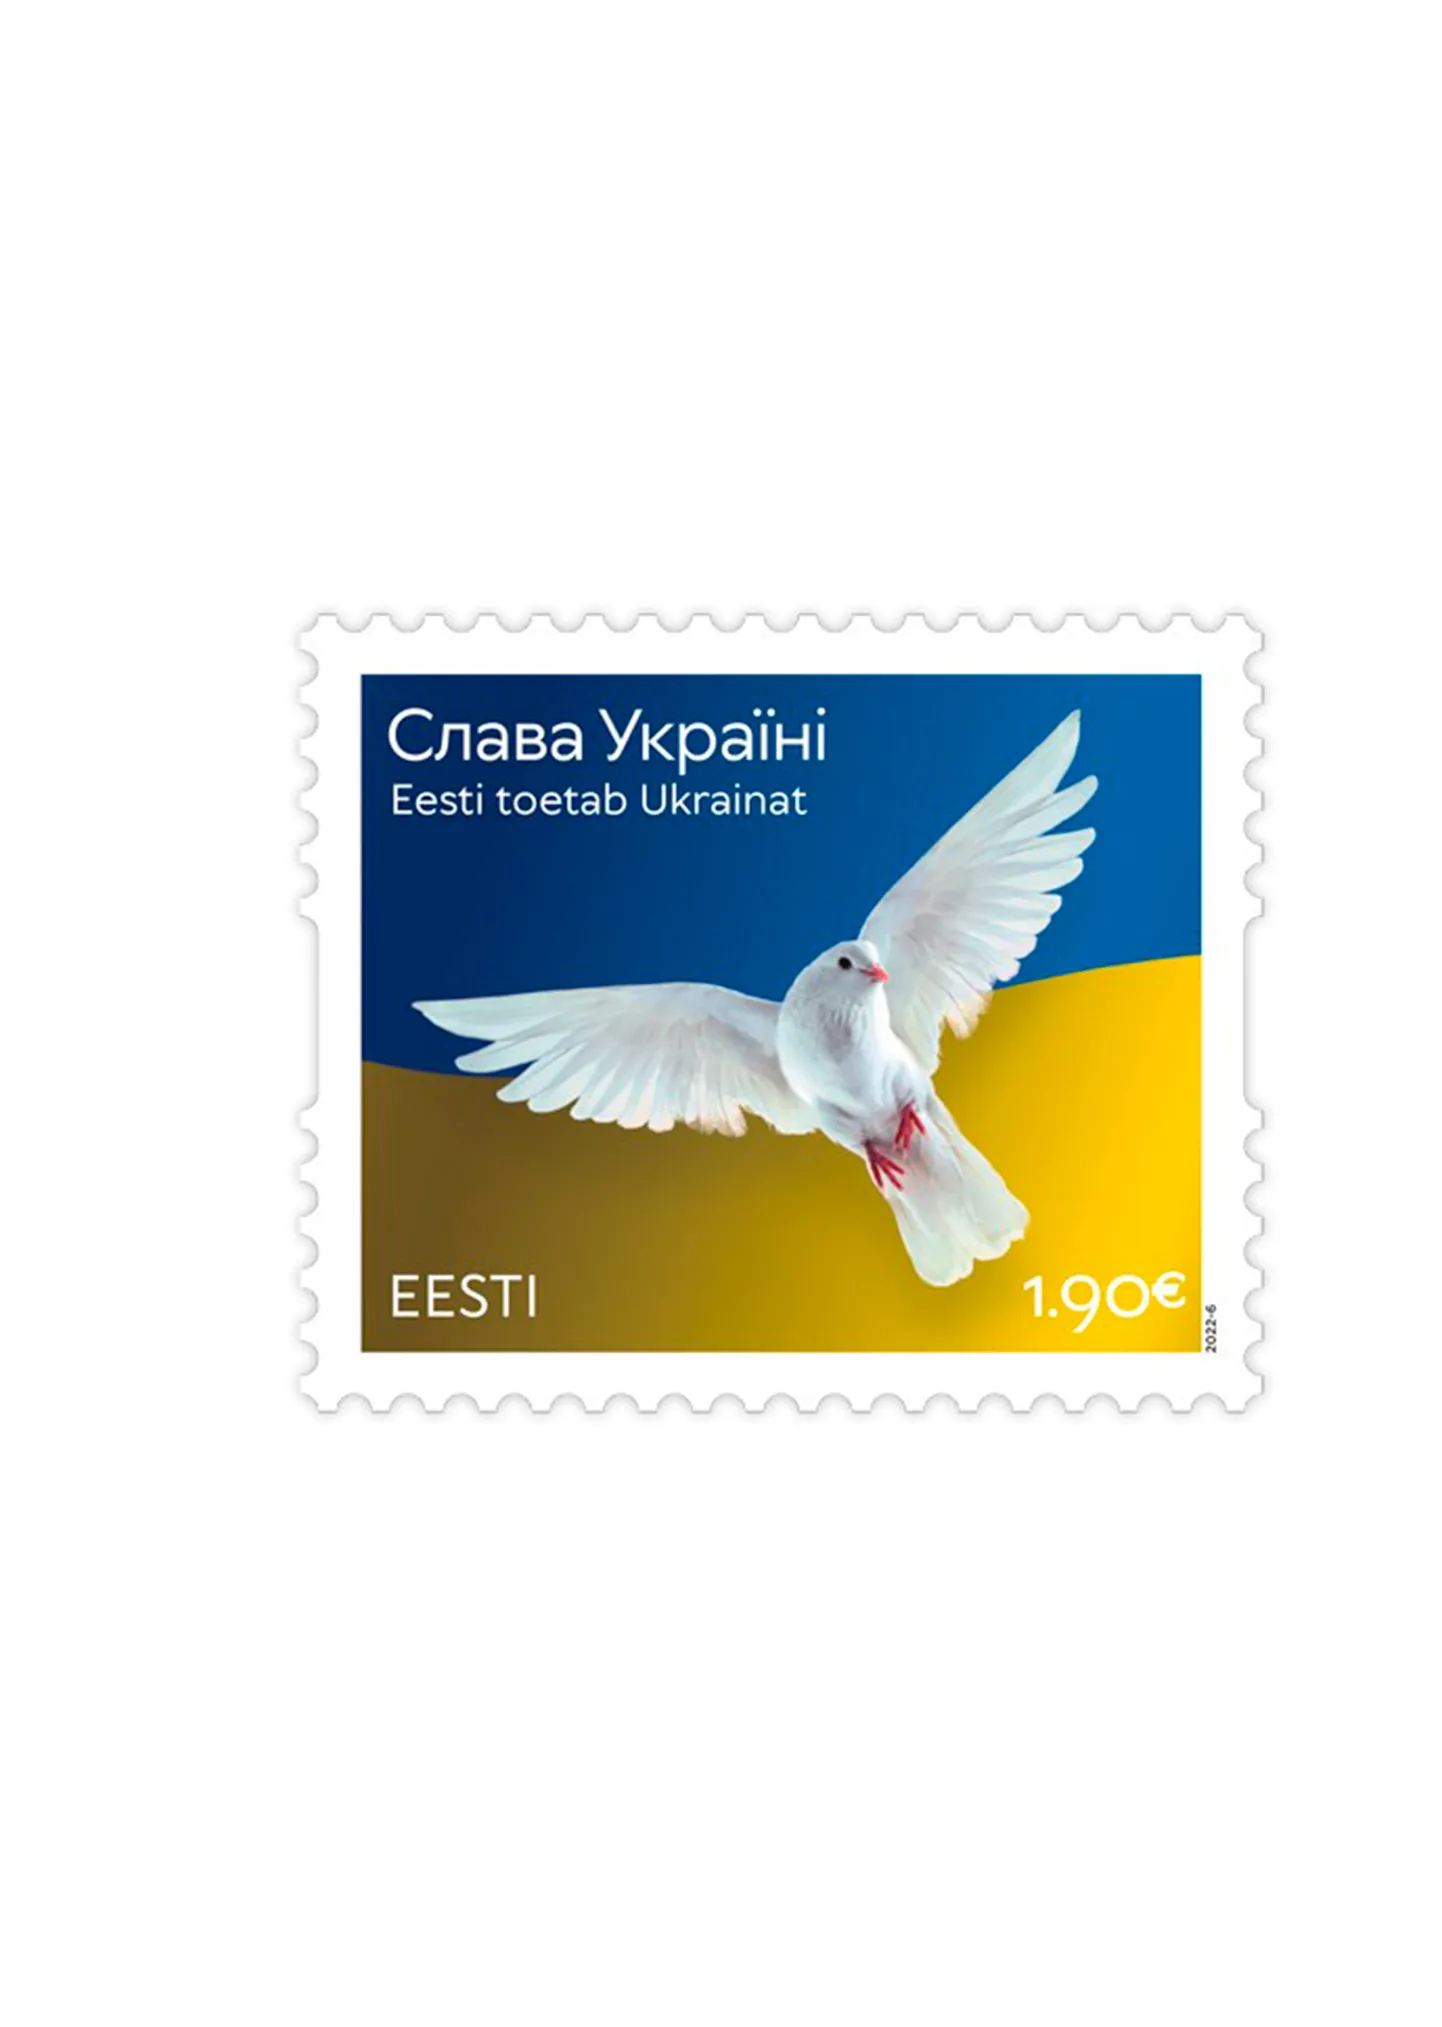 Почтовая марка года